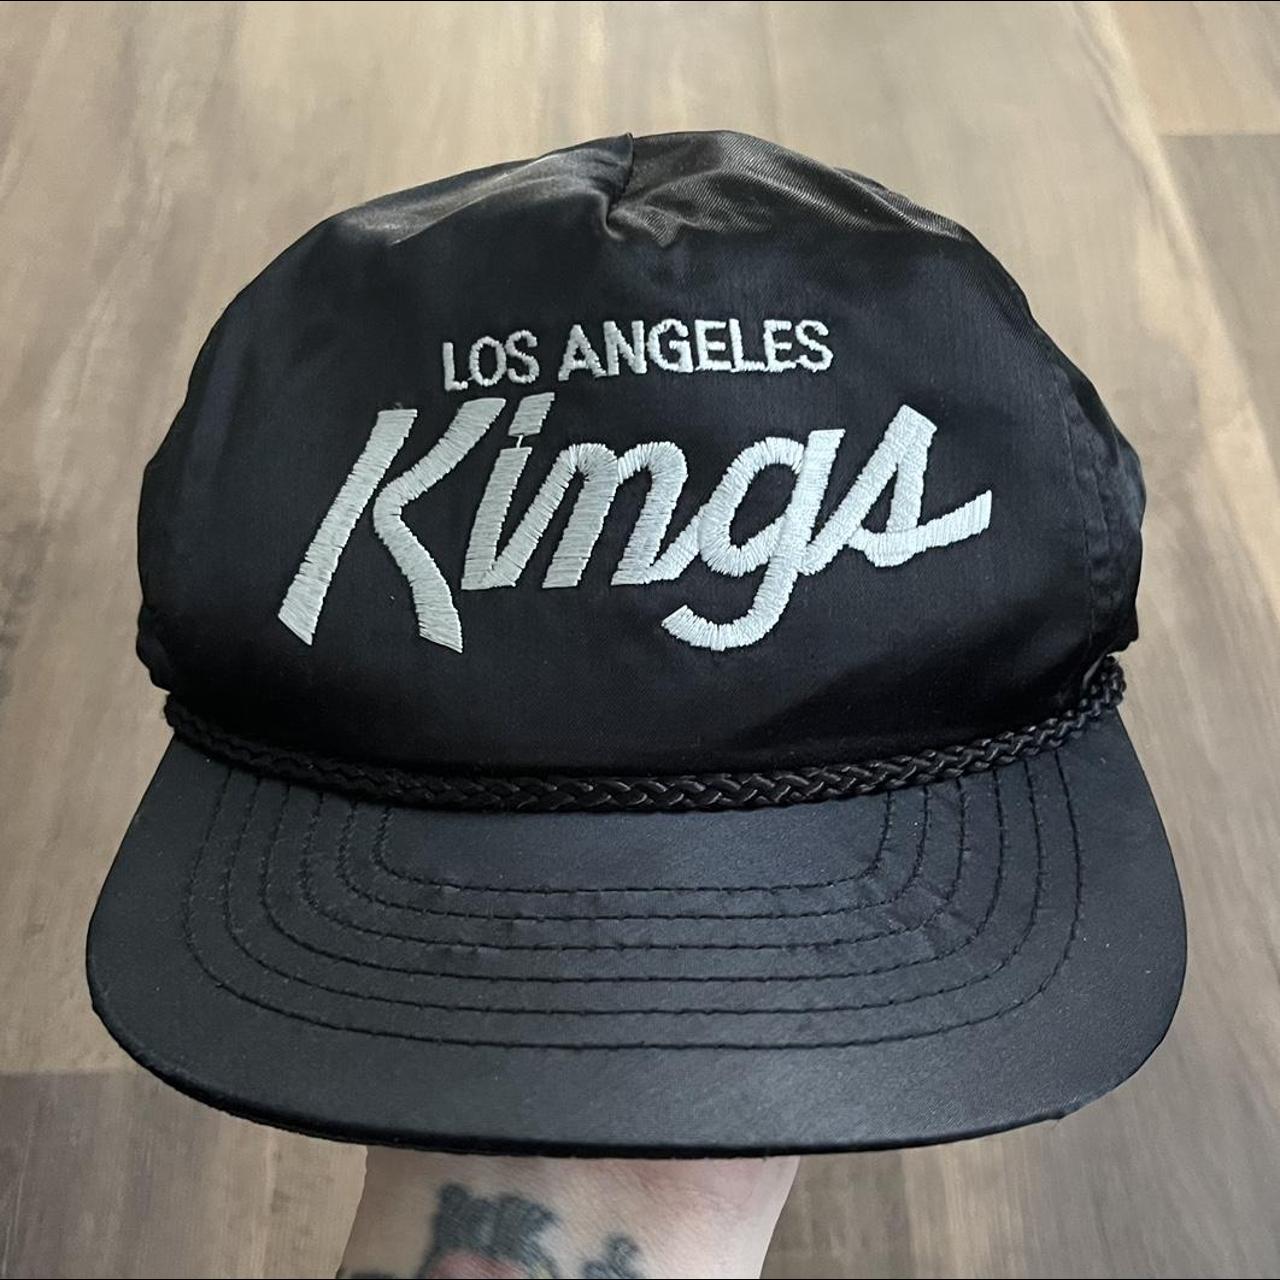 Vintage Los Angeles kings sayin script hat Great - Depop